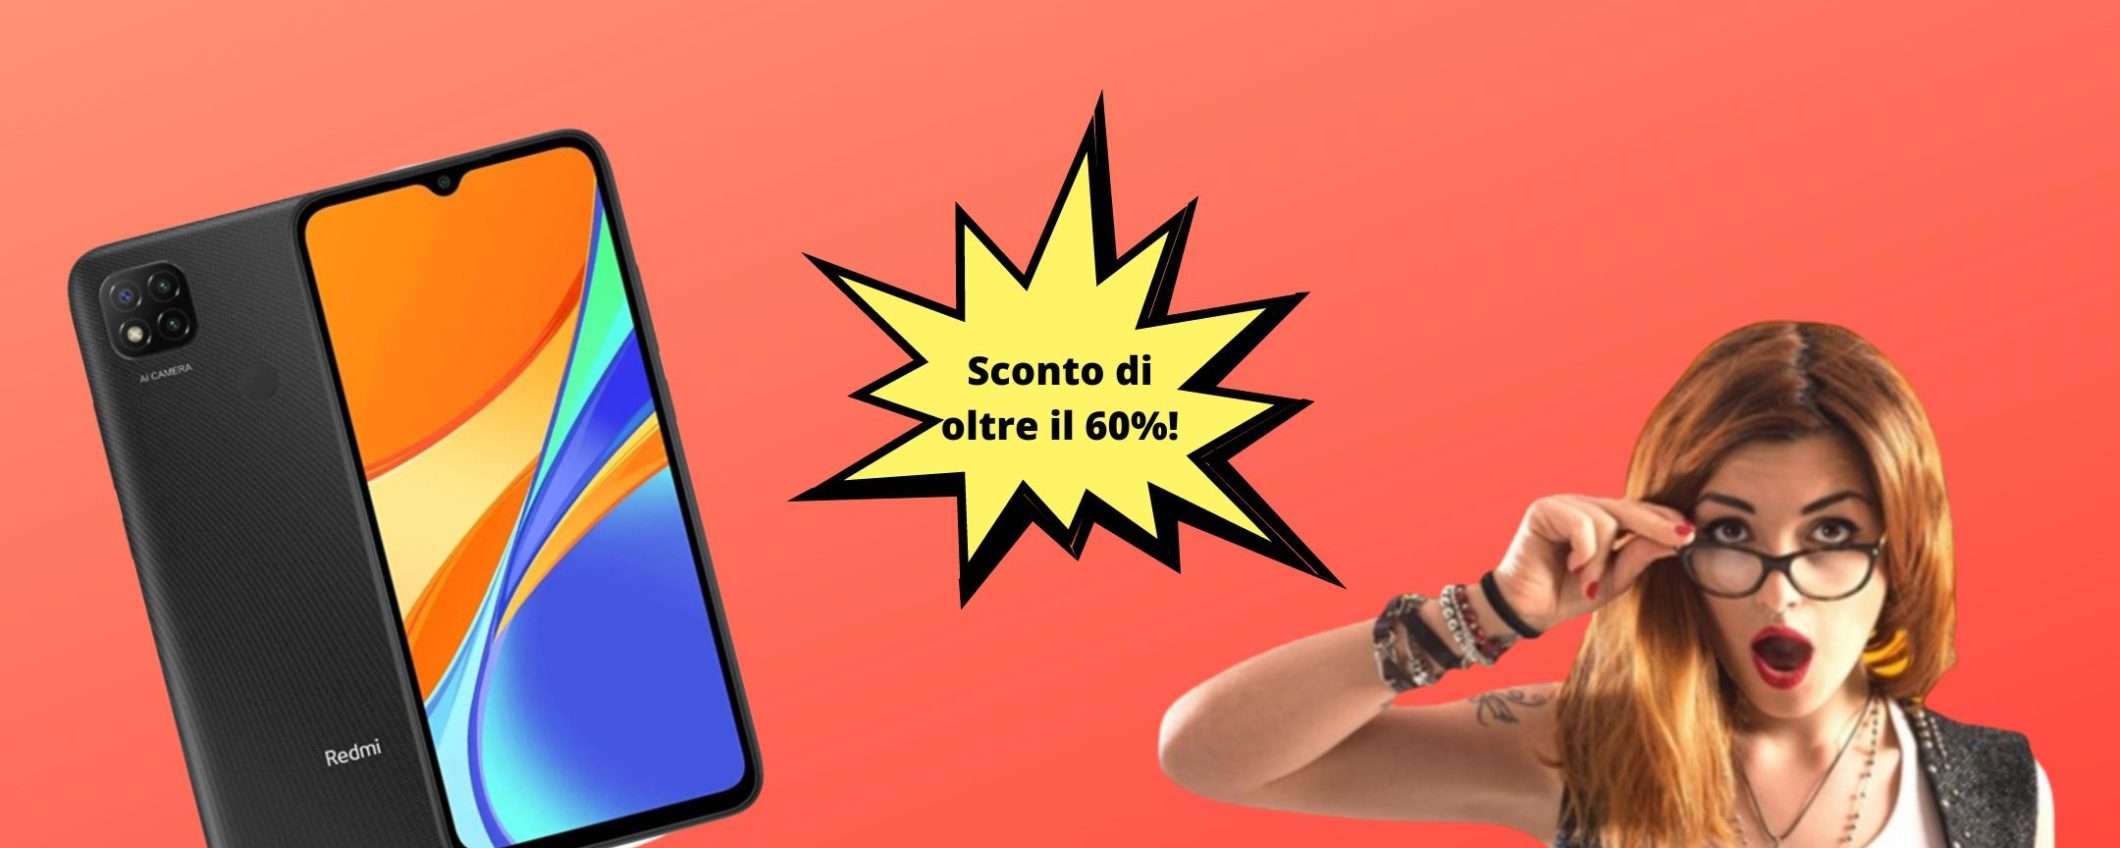 Xiaomi Redmi 9C a 134€ con oltre il 60% di sconto su eBay